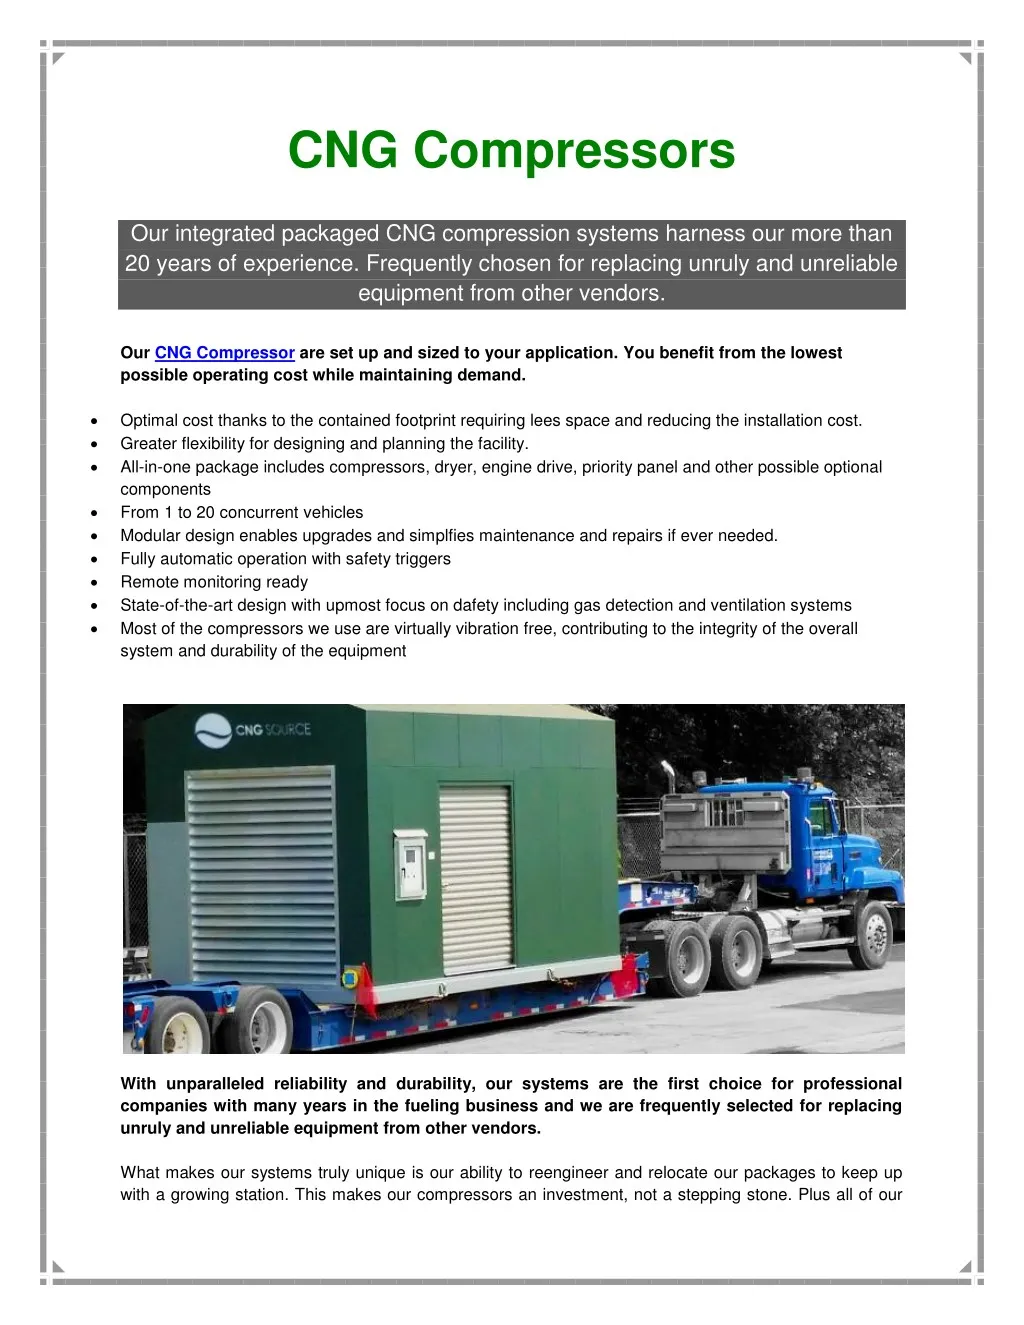 cng compressors